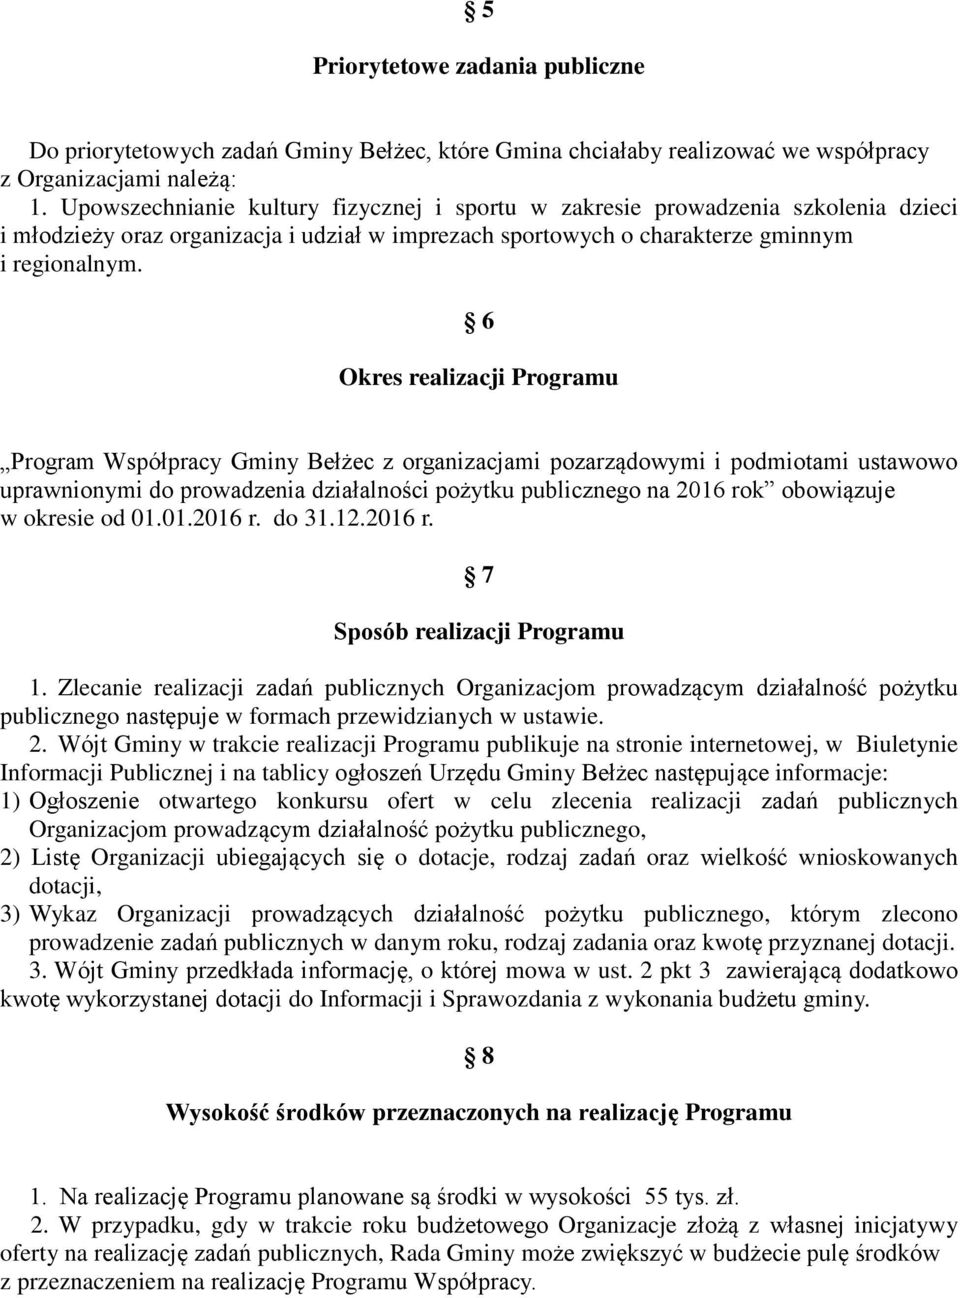 6 Okres realizacji Programu Program Współpracy Gminy Bełżec z organizacjami pozarządowymi i podmiotami ustawowo uprawnionymi do prowadzenia działalności pożytku publicznego na 2016 rok obowiązuje w